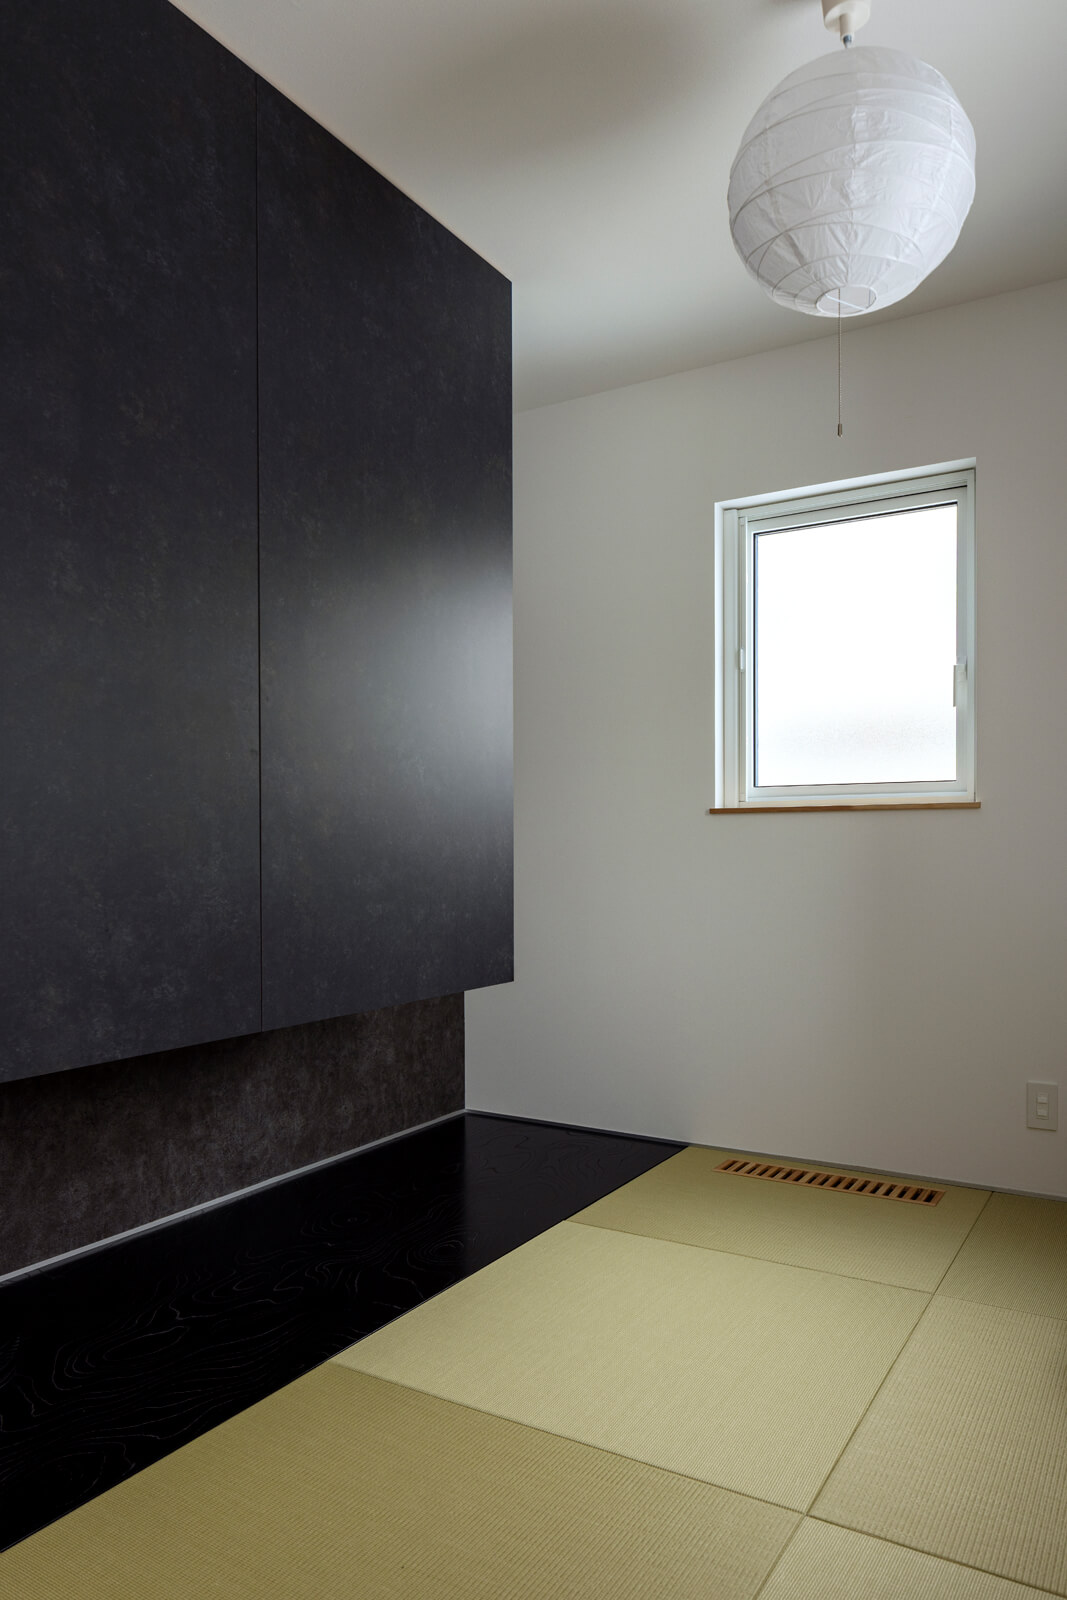 リビング続きに設けた和室は予備室を兼ねる。黒い床板は、浮造りを施したケヤキ材。琉球畳や浮き押し入れの建具にグレーのクロスを用い、和モダンな雰囲気に仕上げた